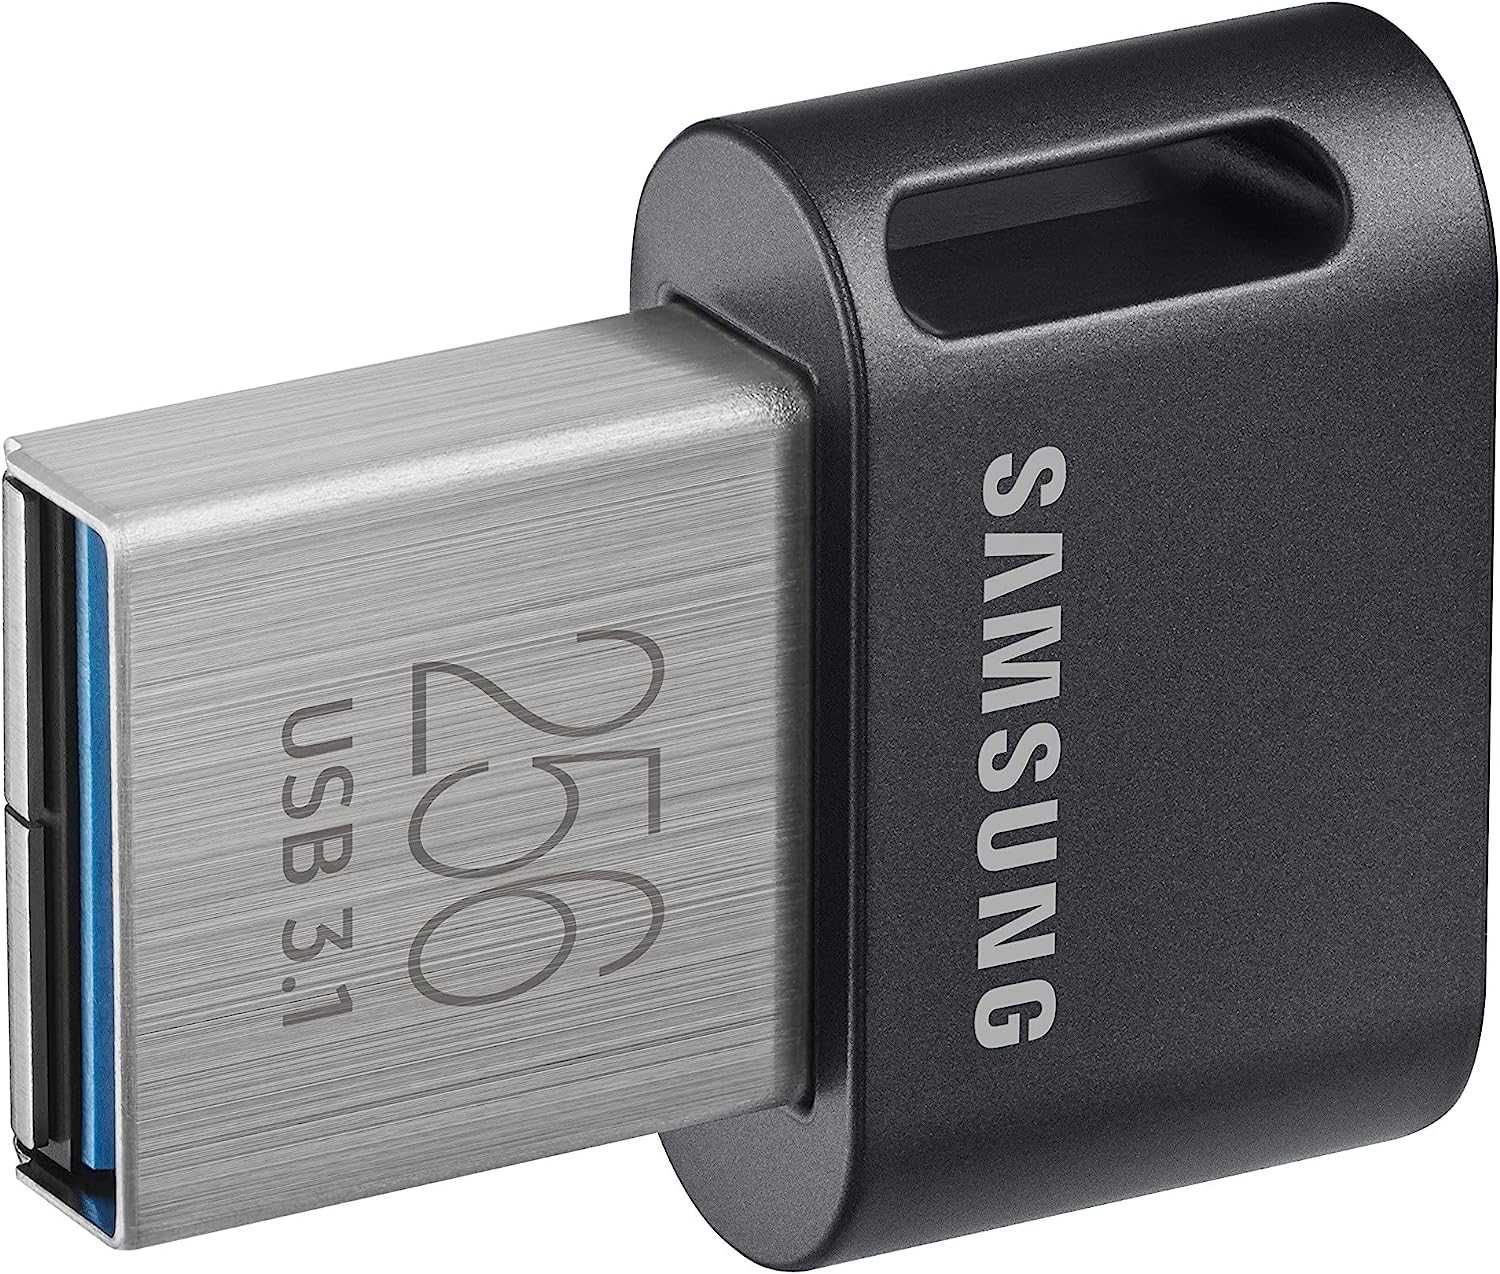 Память USB Flash 256 ГБ Samsung FIT [SAMSUNG MUF-256AB/AM]